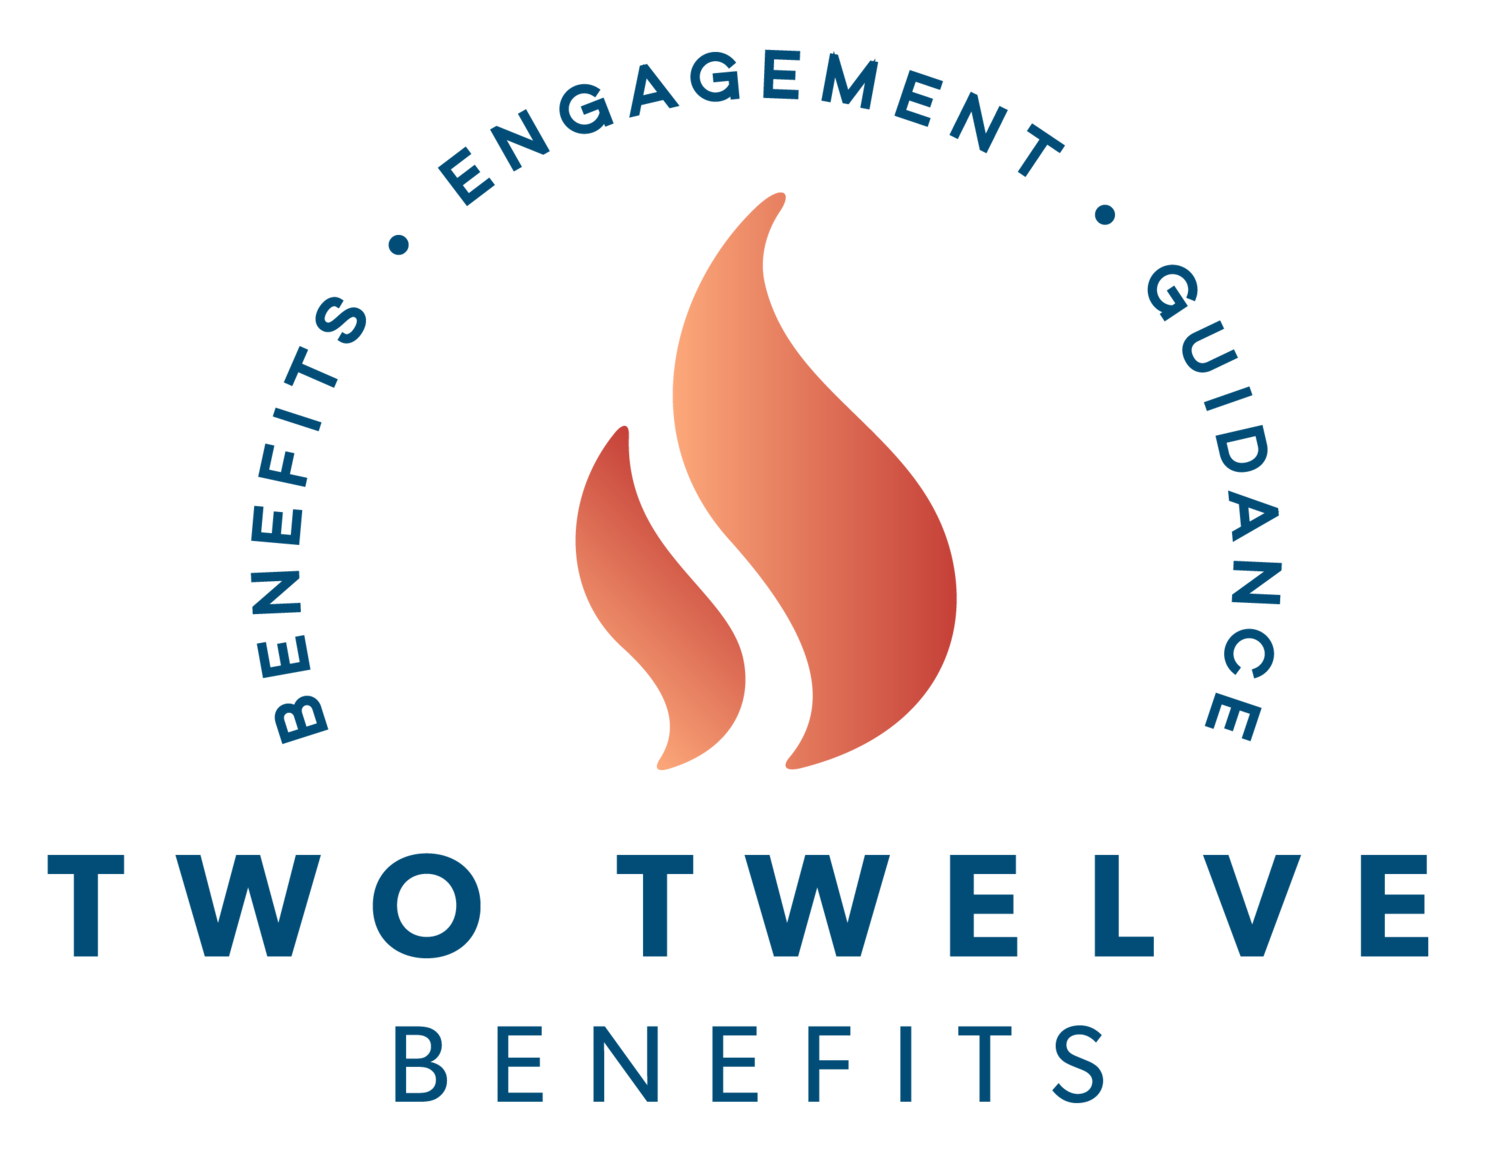 Two Twelve Benefits